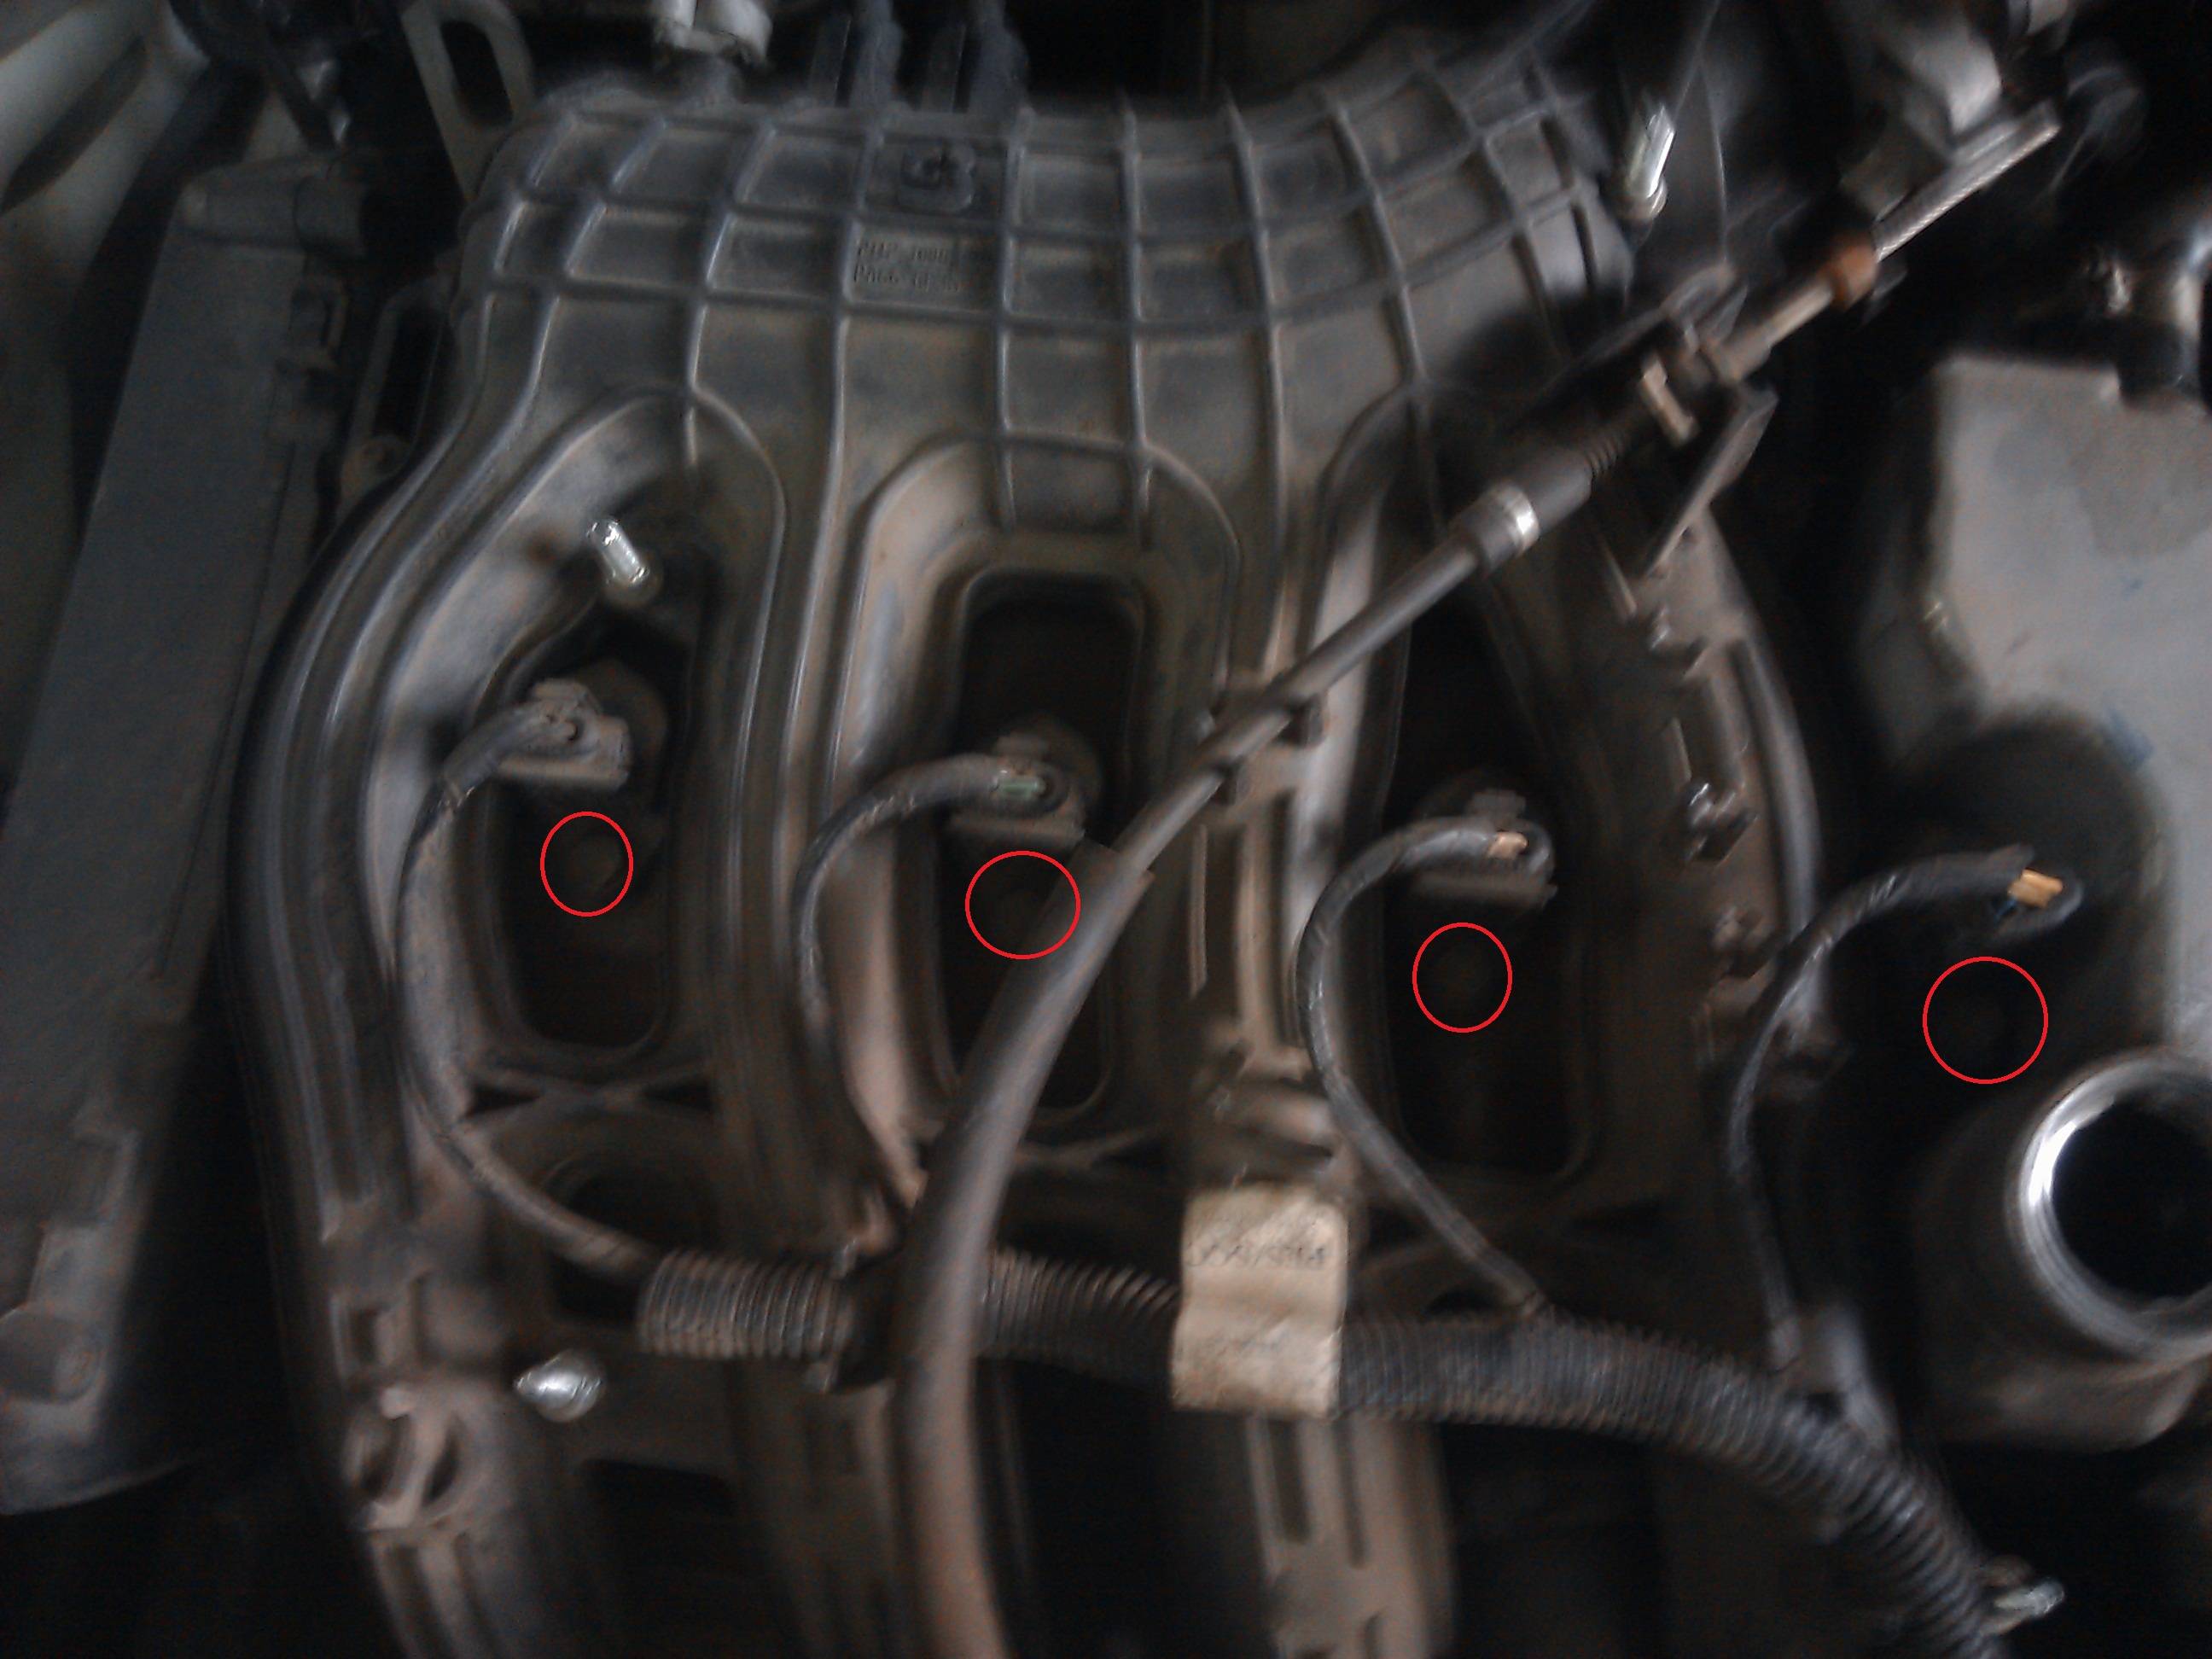 Замена свечей лада калина 16 клапанов - ремонт авто своими руками avtoservis-rus.ru